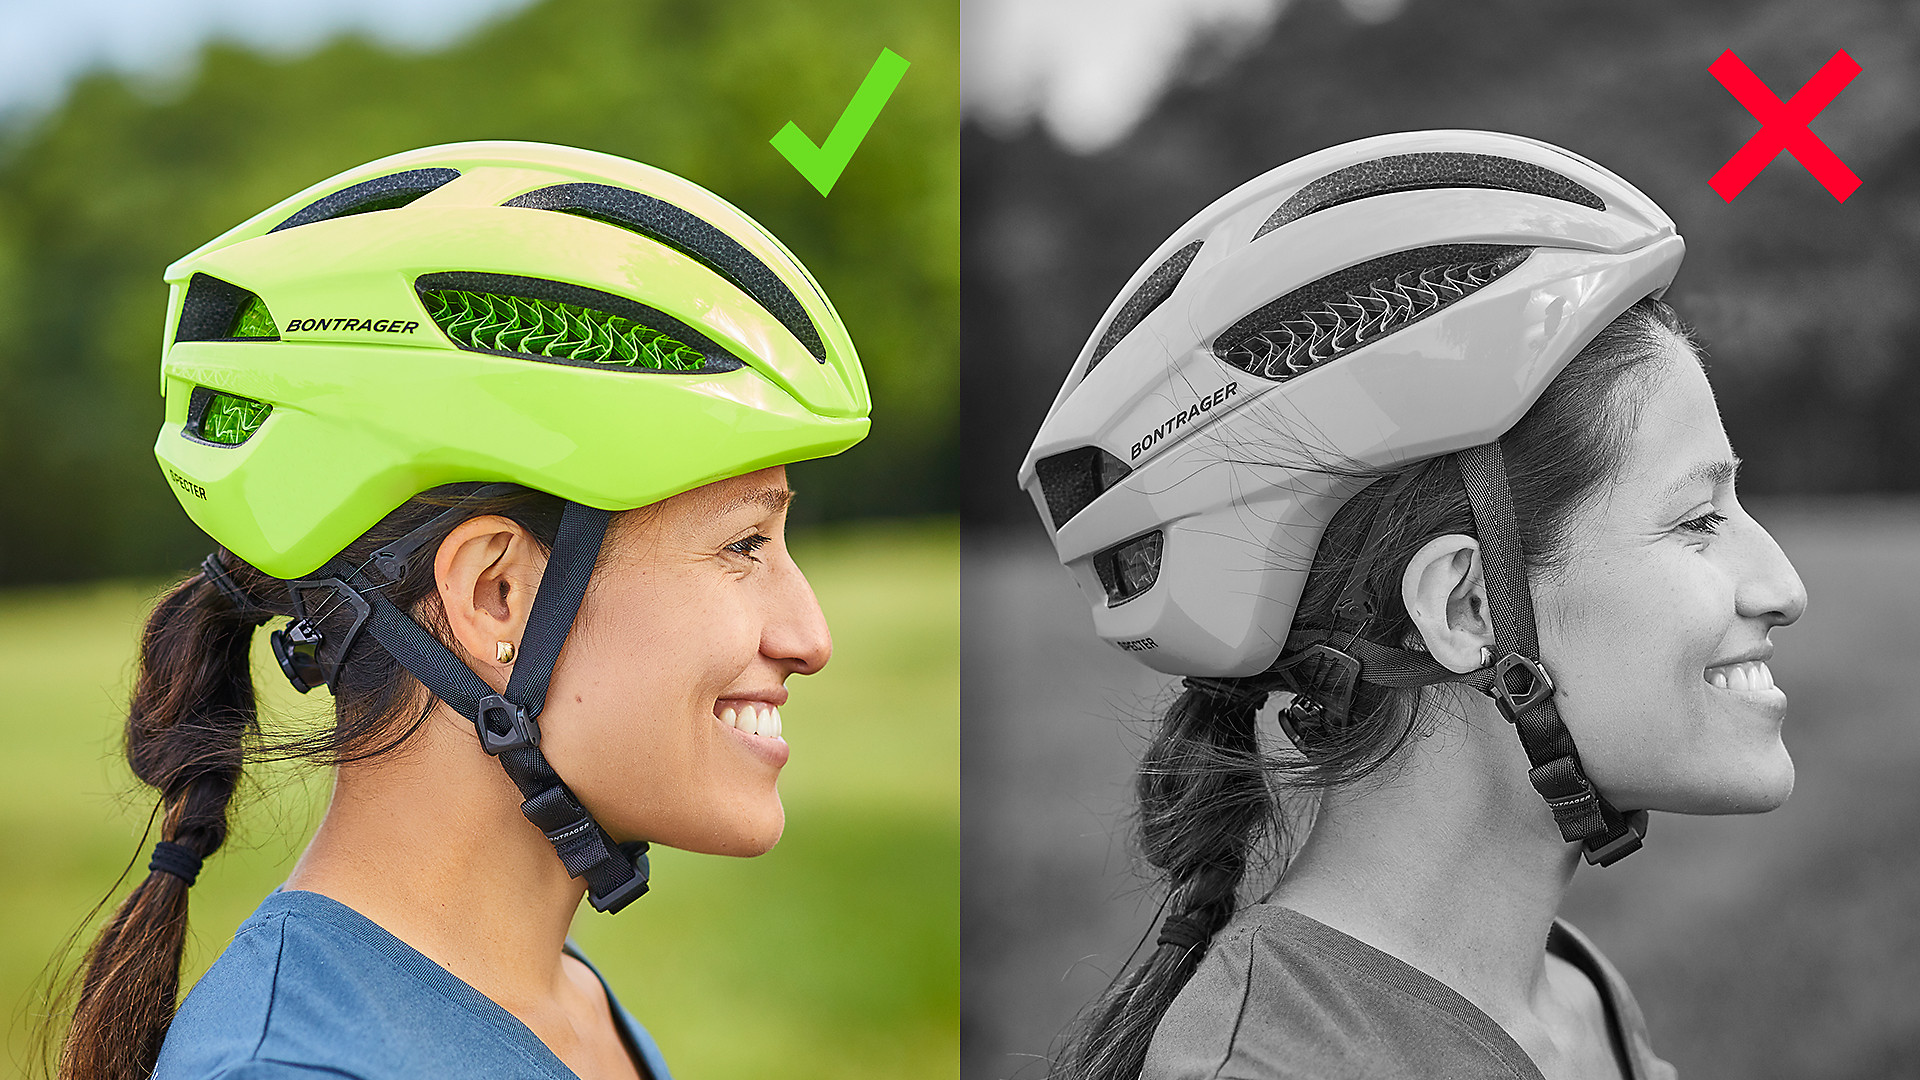 Adjust Bicycle Cycling MTB Skate Helmet Mountain Bike Helmet for Men Women 